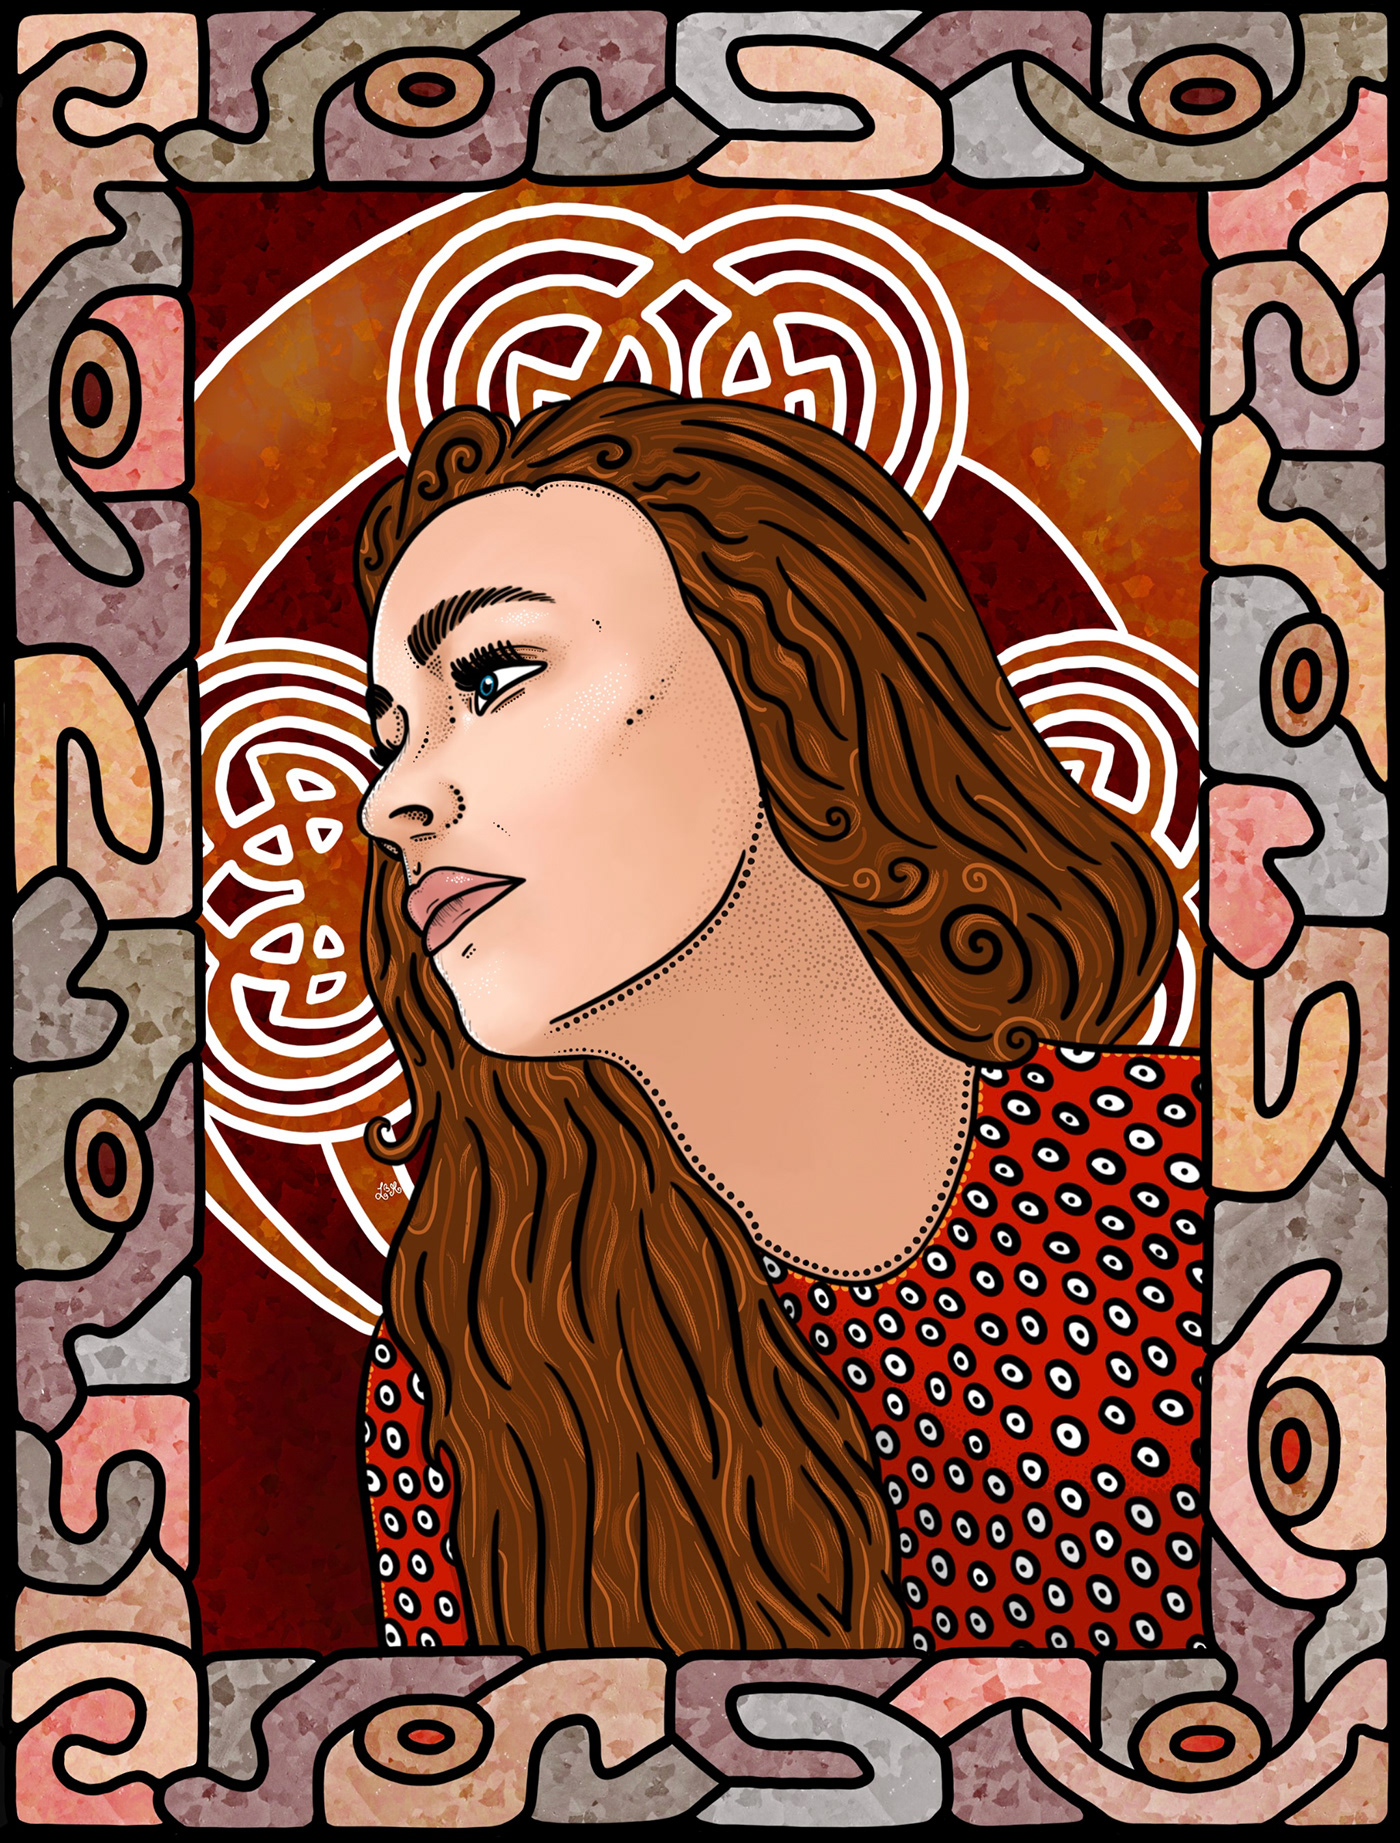 irish Celtic goddess mythology legend Folklore stained glass iconography digital